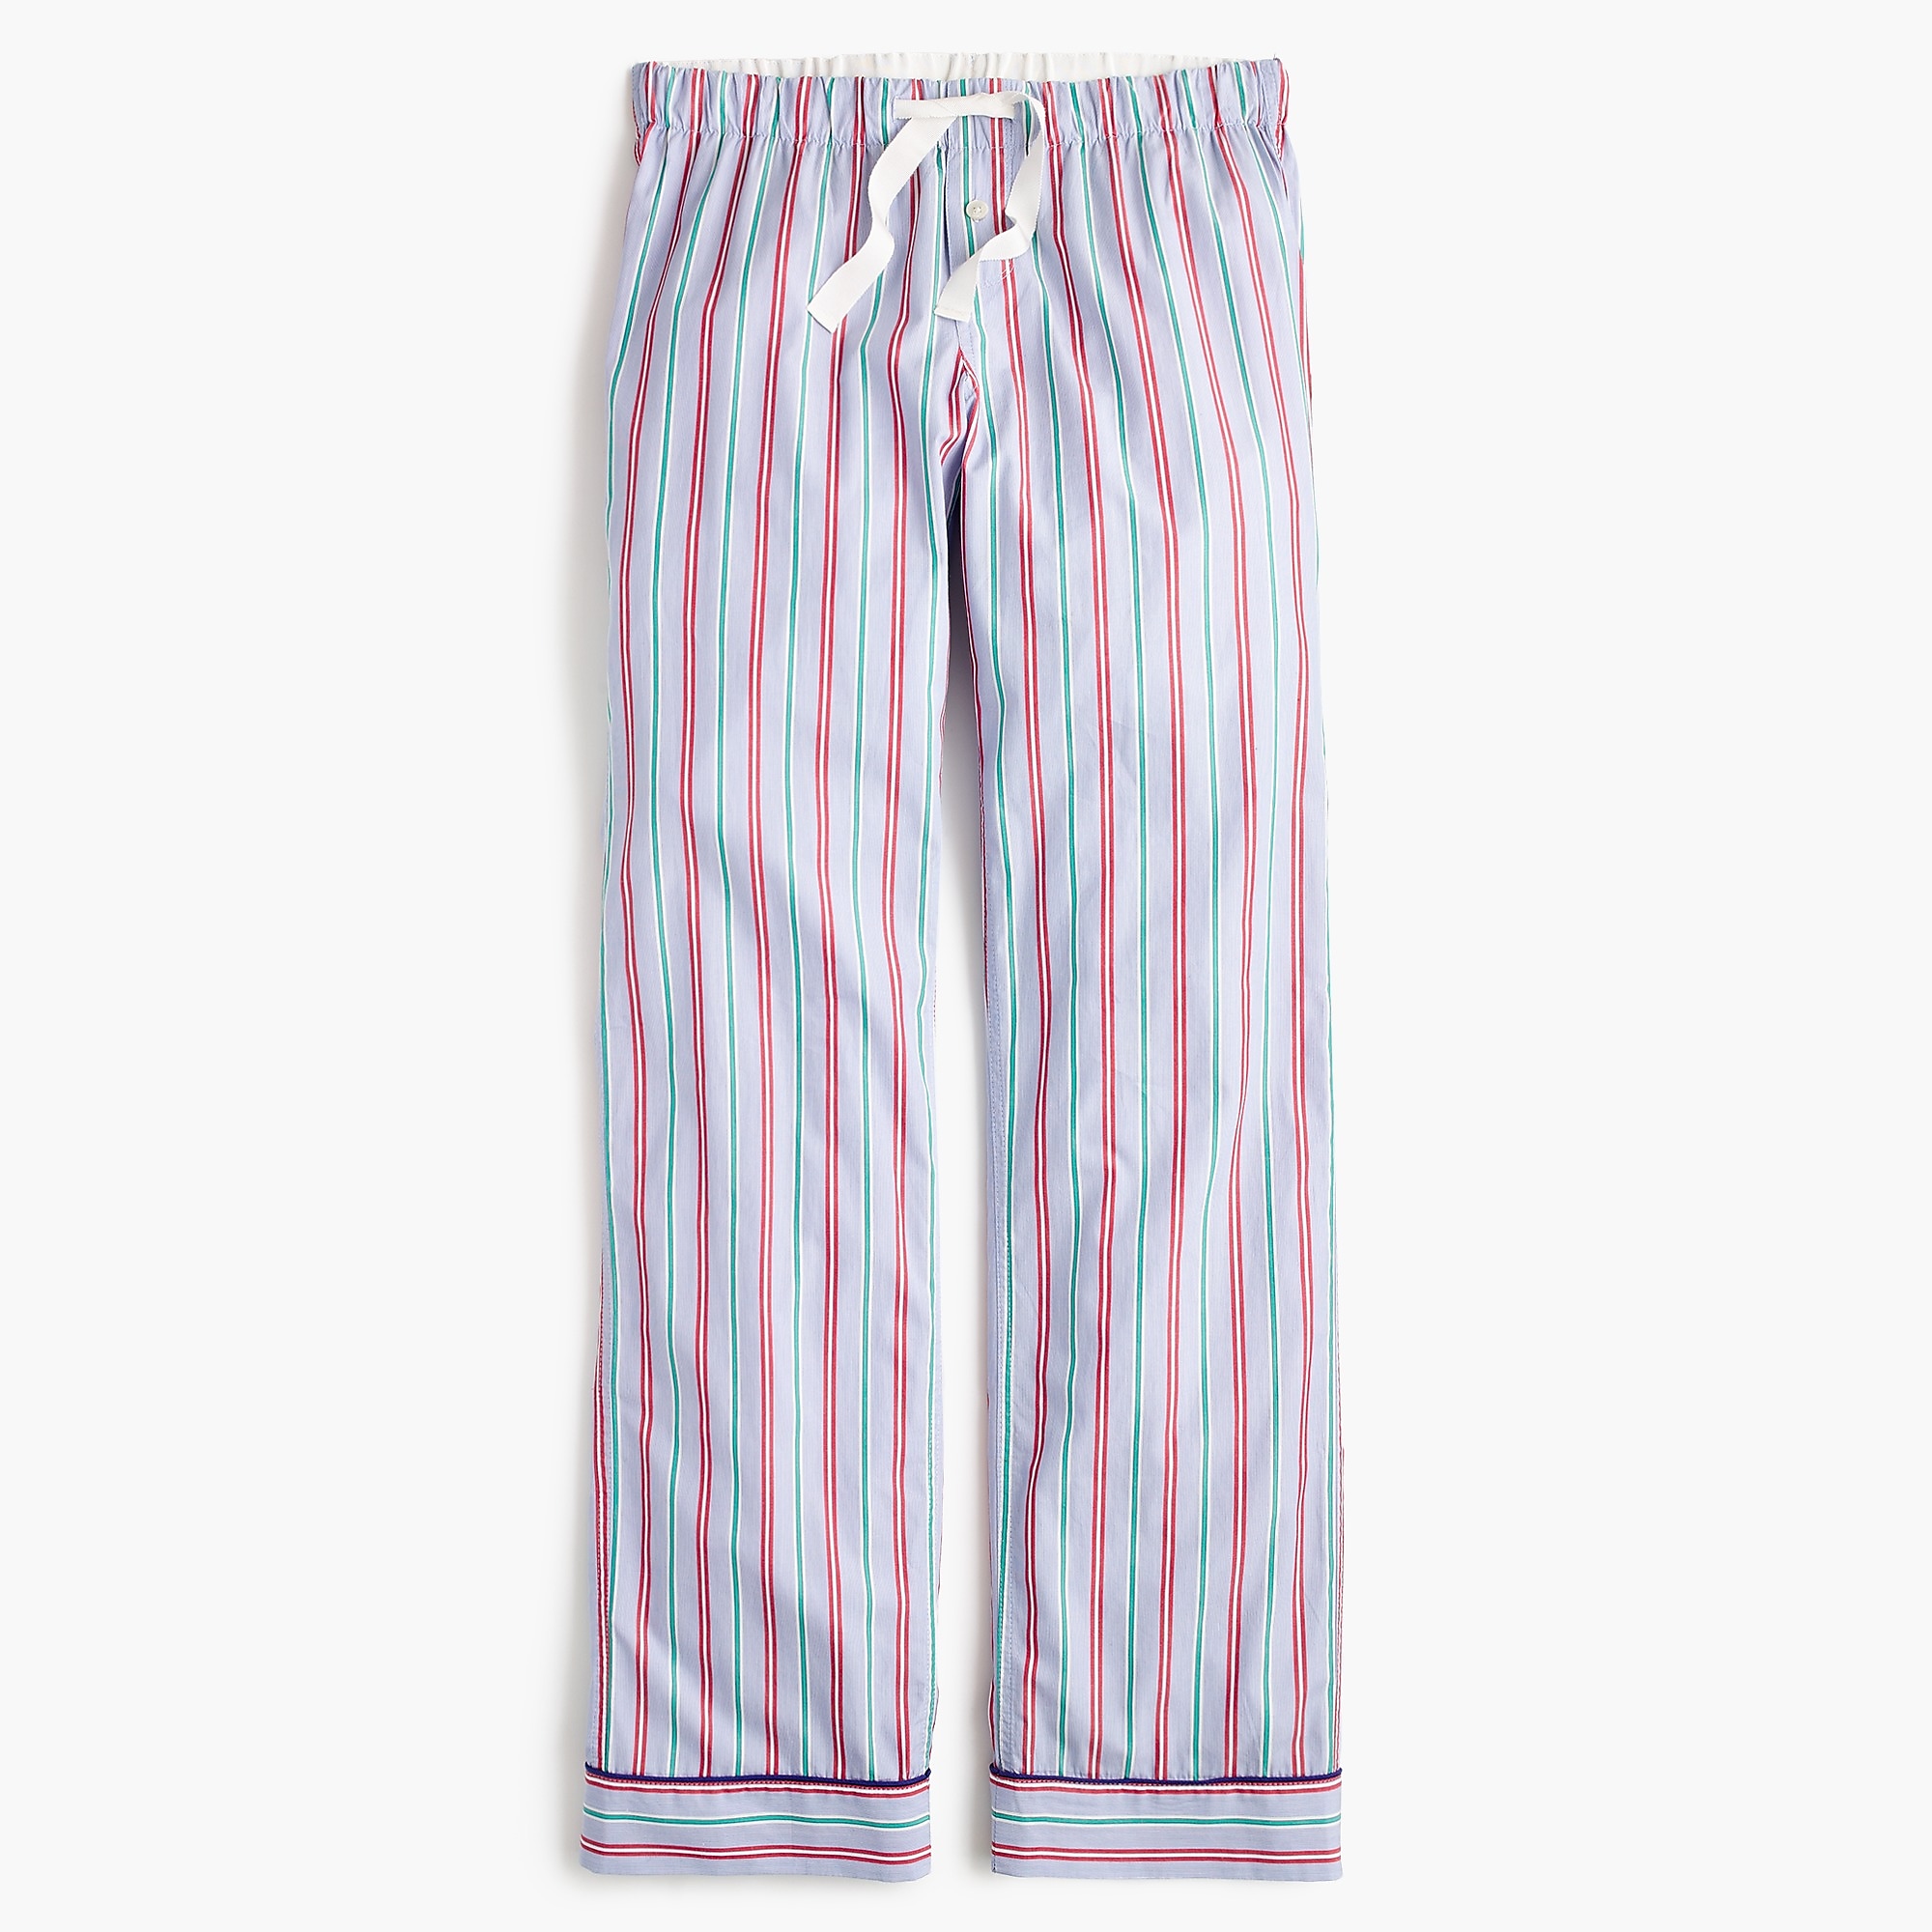 Candy stripe pajama pant : Women pajamas | J.Crew